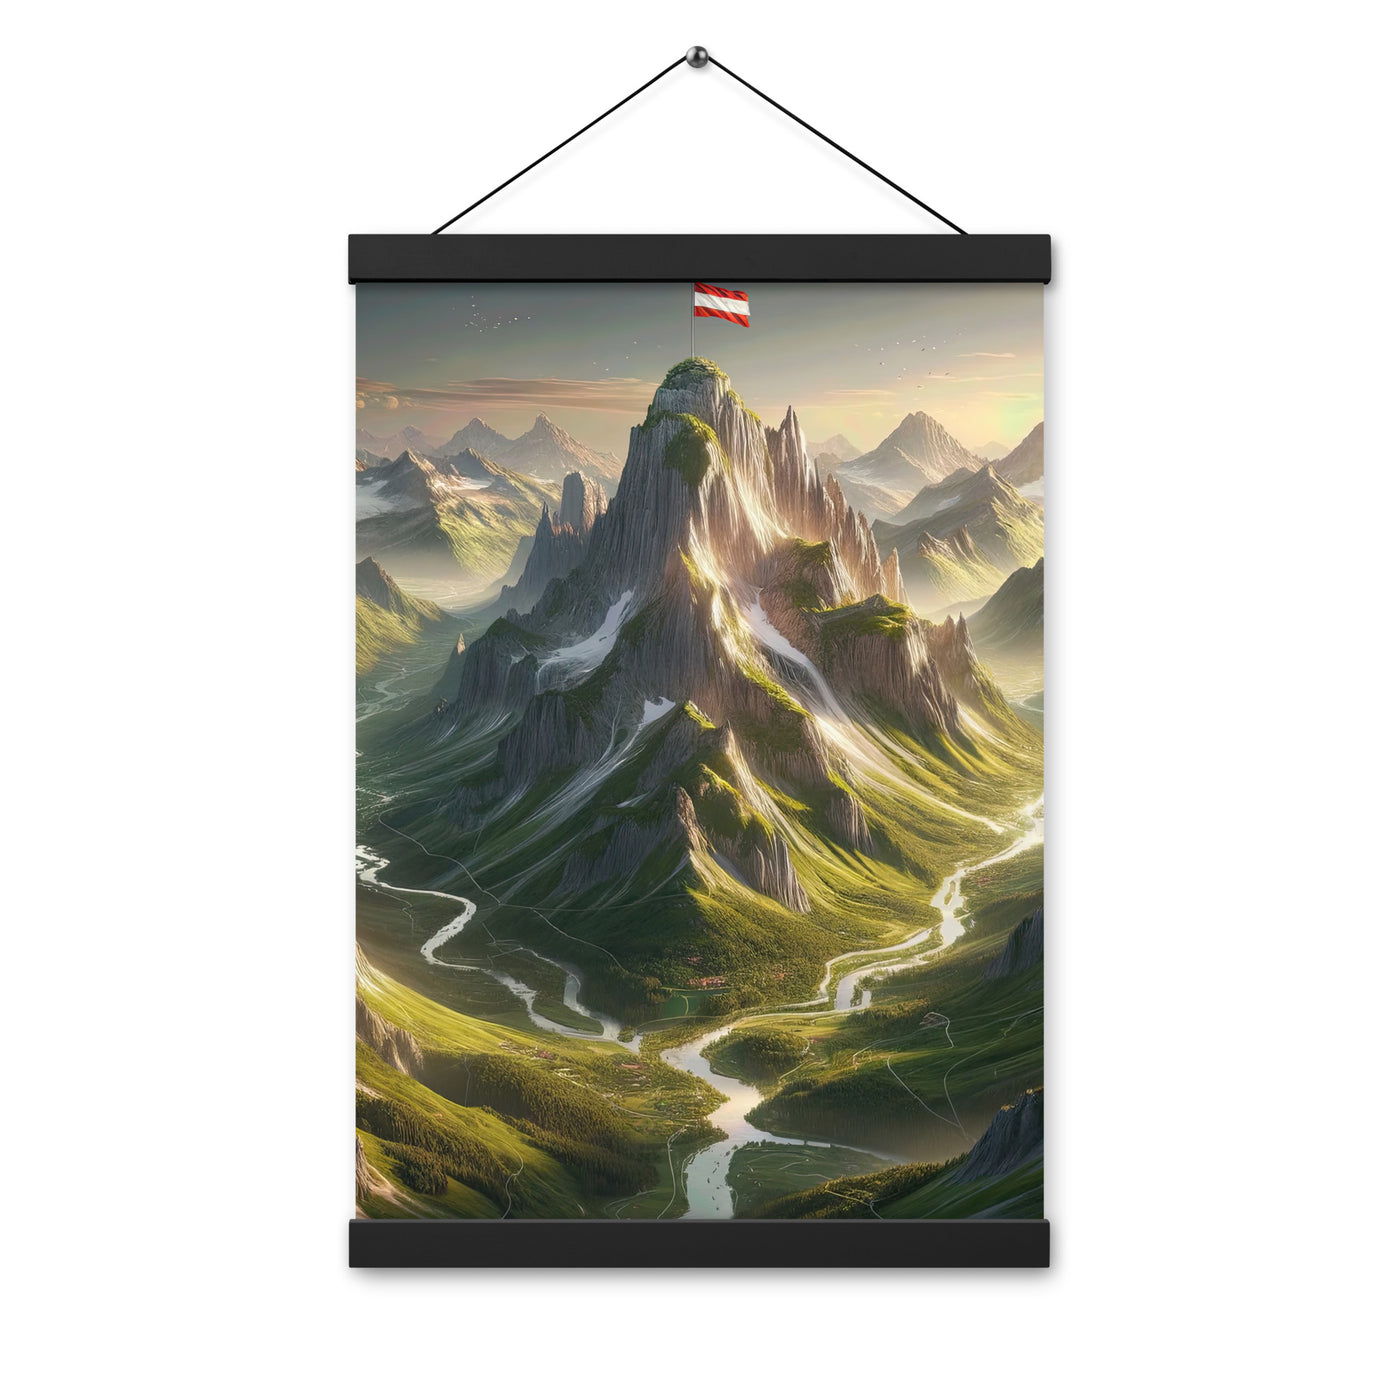 Fotorealistisches Bild der Alpen mit österreichischer Flagge, scharfen Gipfeln und grünen Tälern - Enhanced Matte Paper Poster With berge xxx yyy zzz 30.5 x 45.7 cm